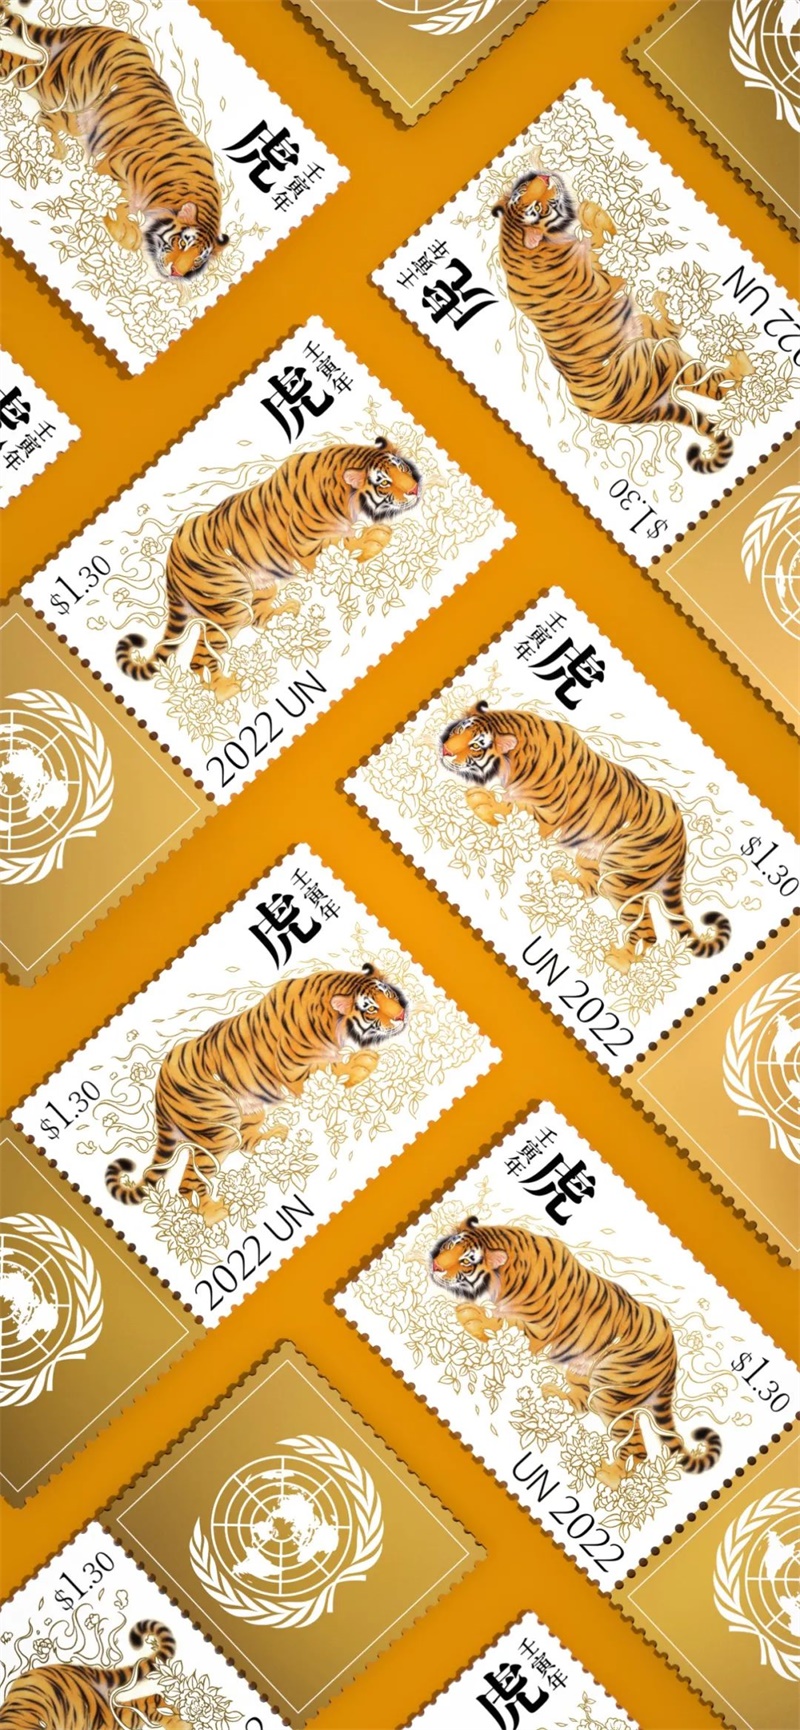 潘虎联合邮政署生肖虎年邮票设计